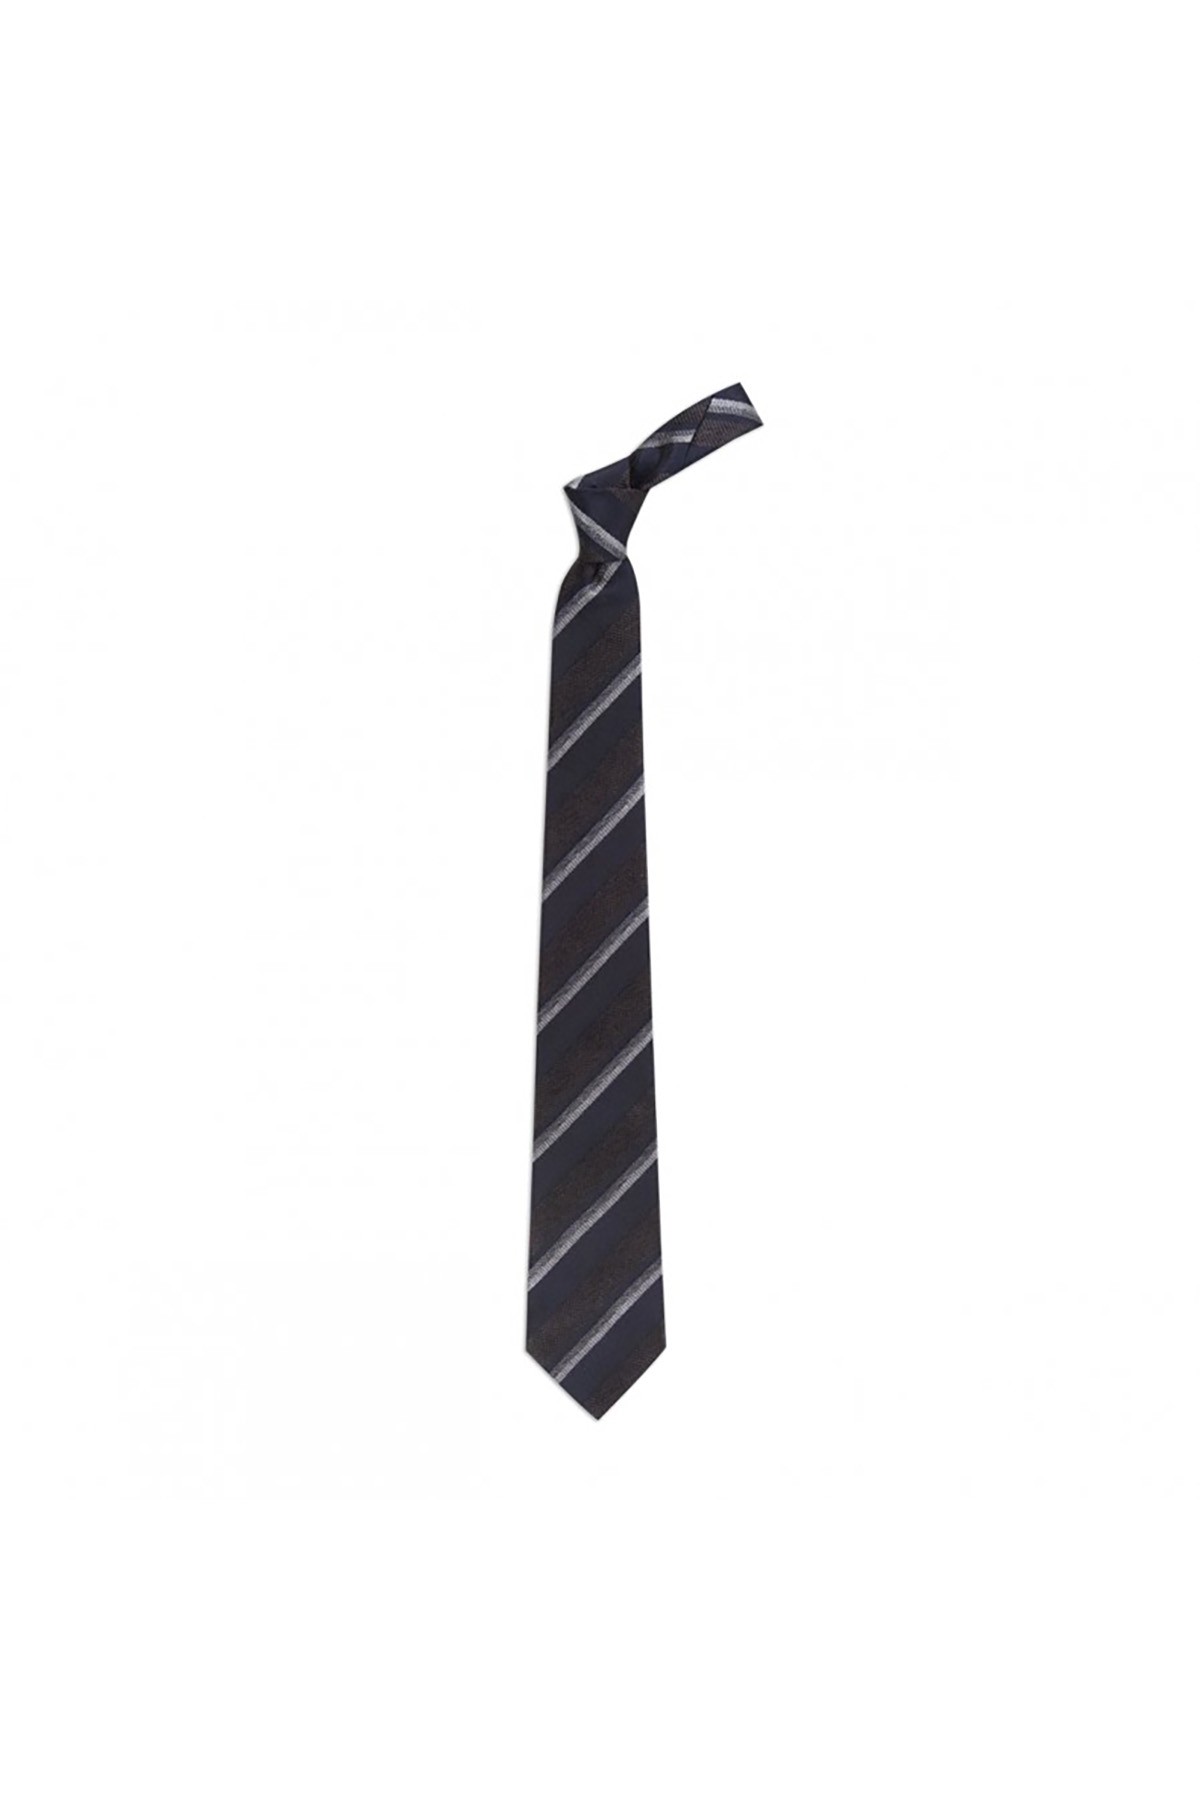 Desenli 8 cm genişliğinde yün ipek karışımlı kravat